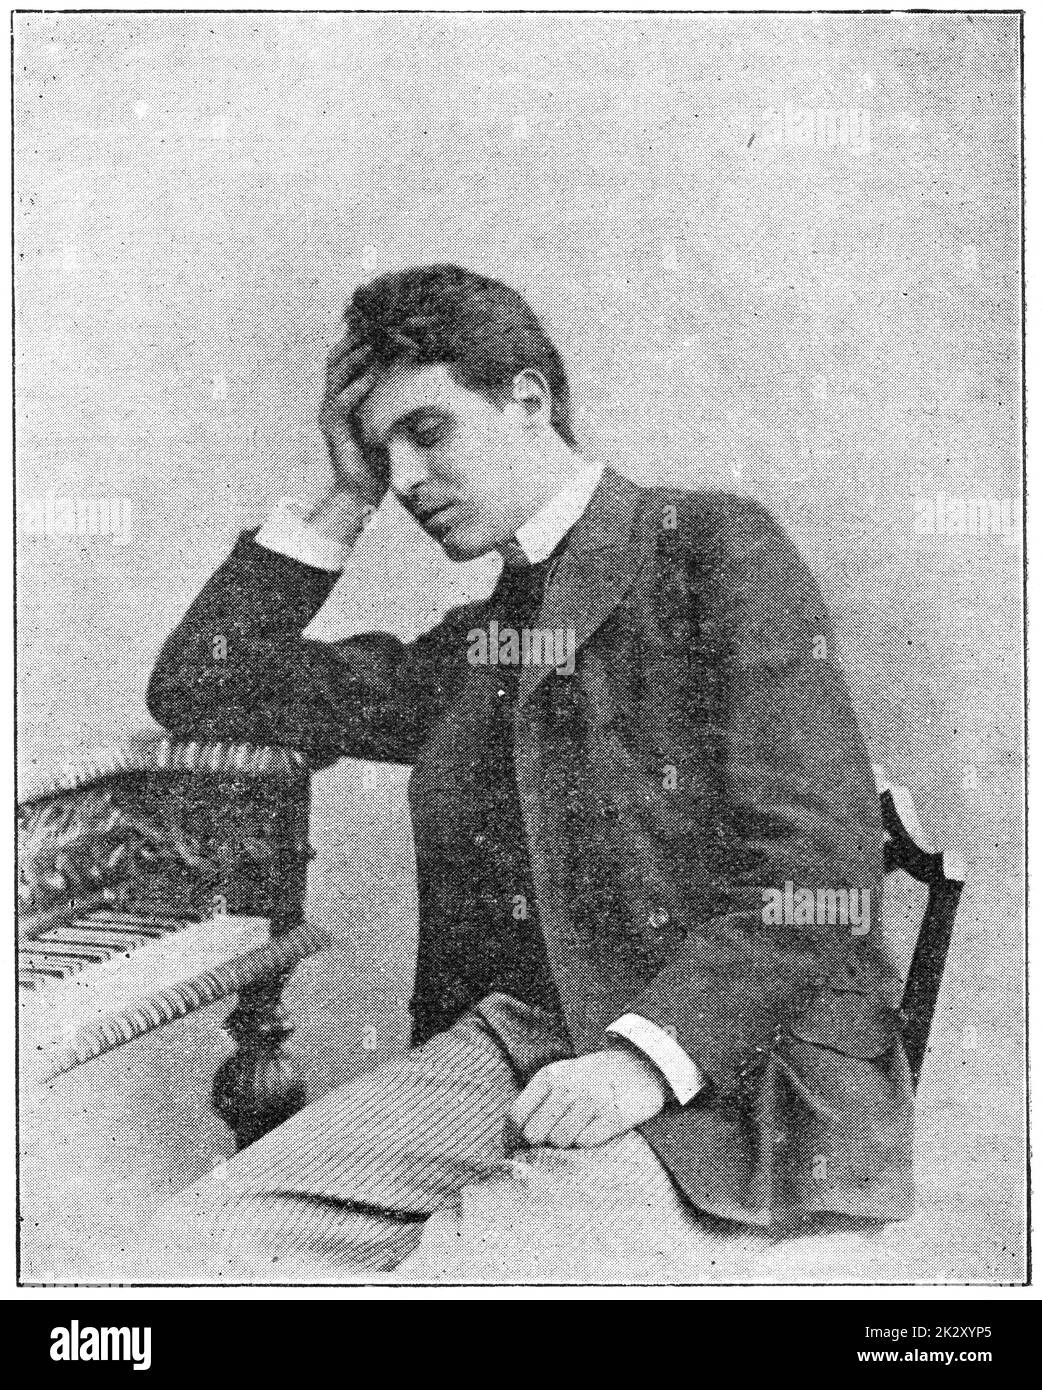 Retrato de Pietro Mascagni - un compositor italiano conocido principalmente por sus óperas. Ilustración del siglo 19. Fondo blanco. Foto de stock